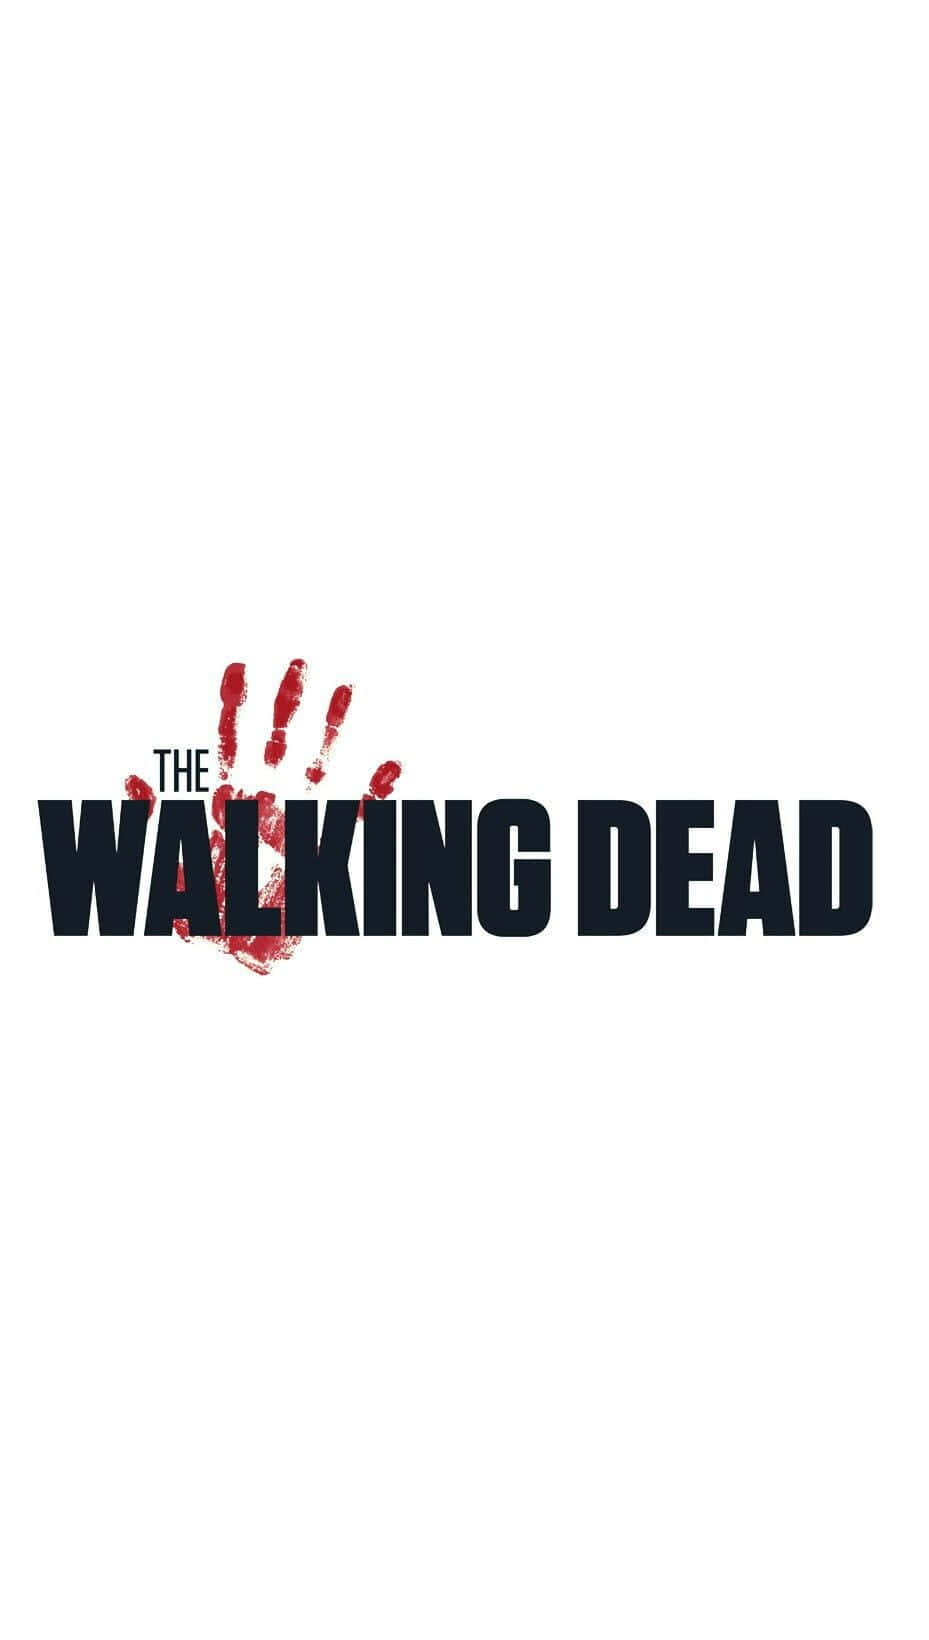 Overleve zombie apokalypsen med The Walking Dead iPhone wallpapers. Wallpaper